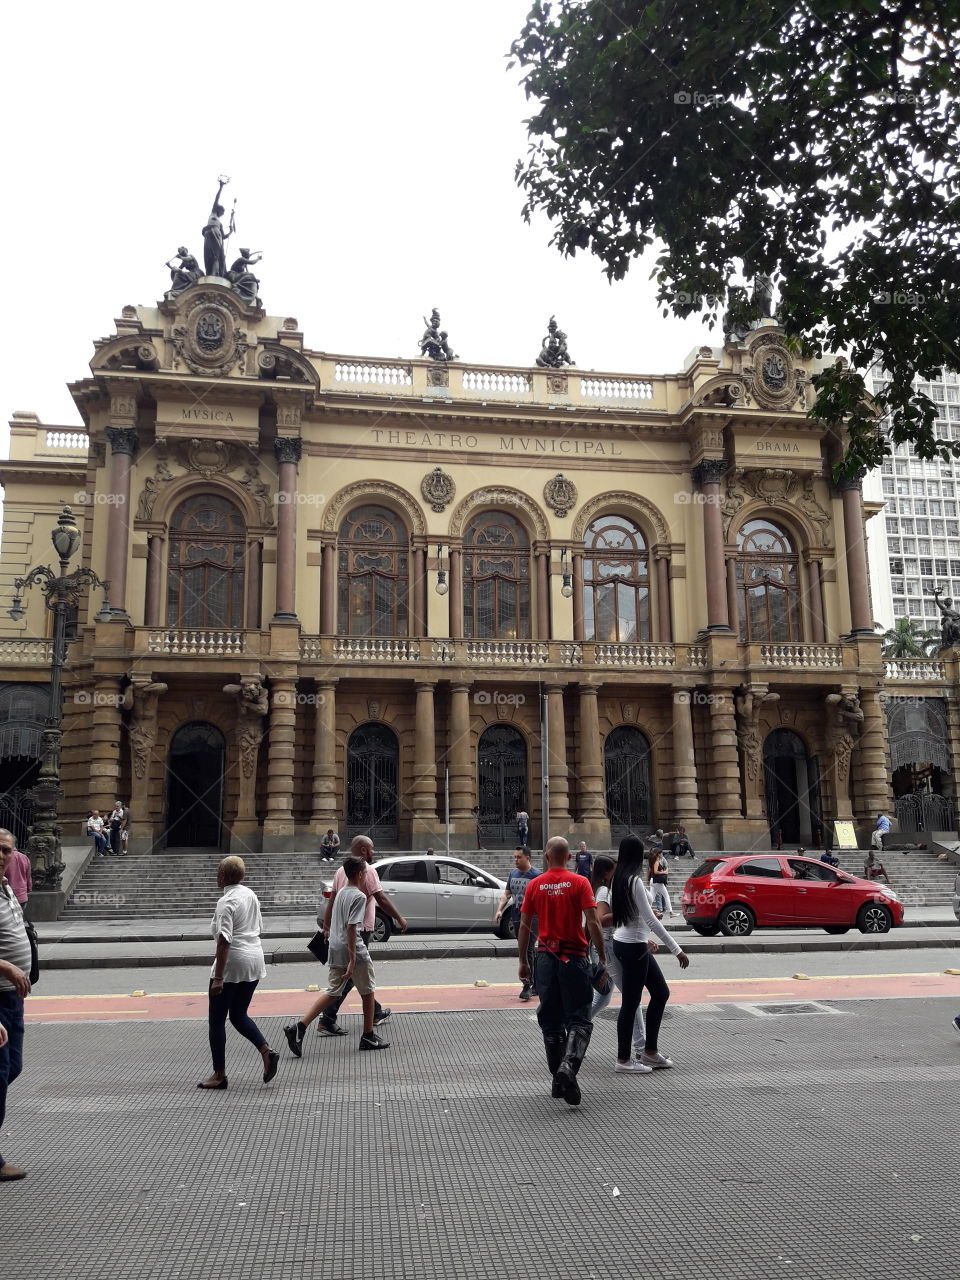 Teatro Municipal, São